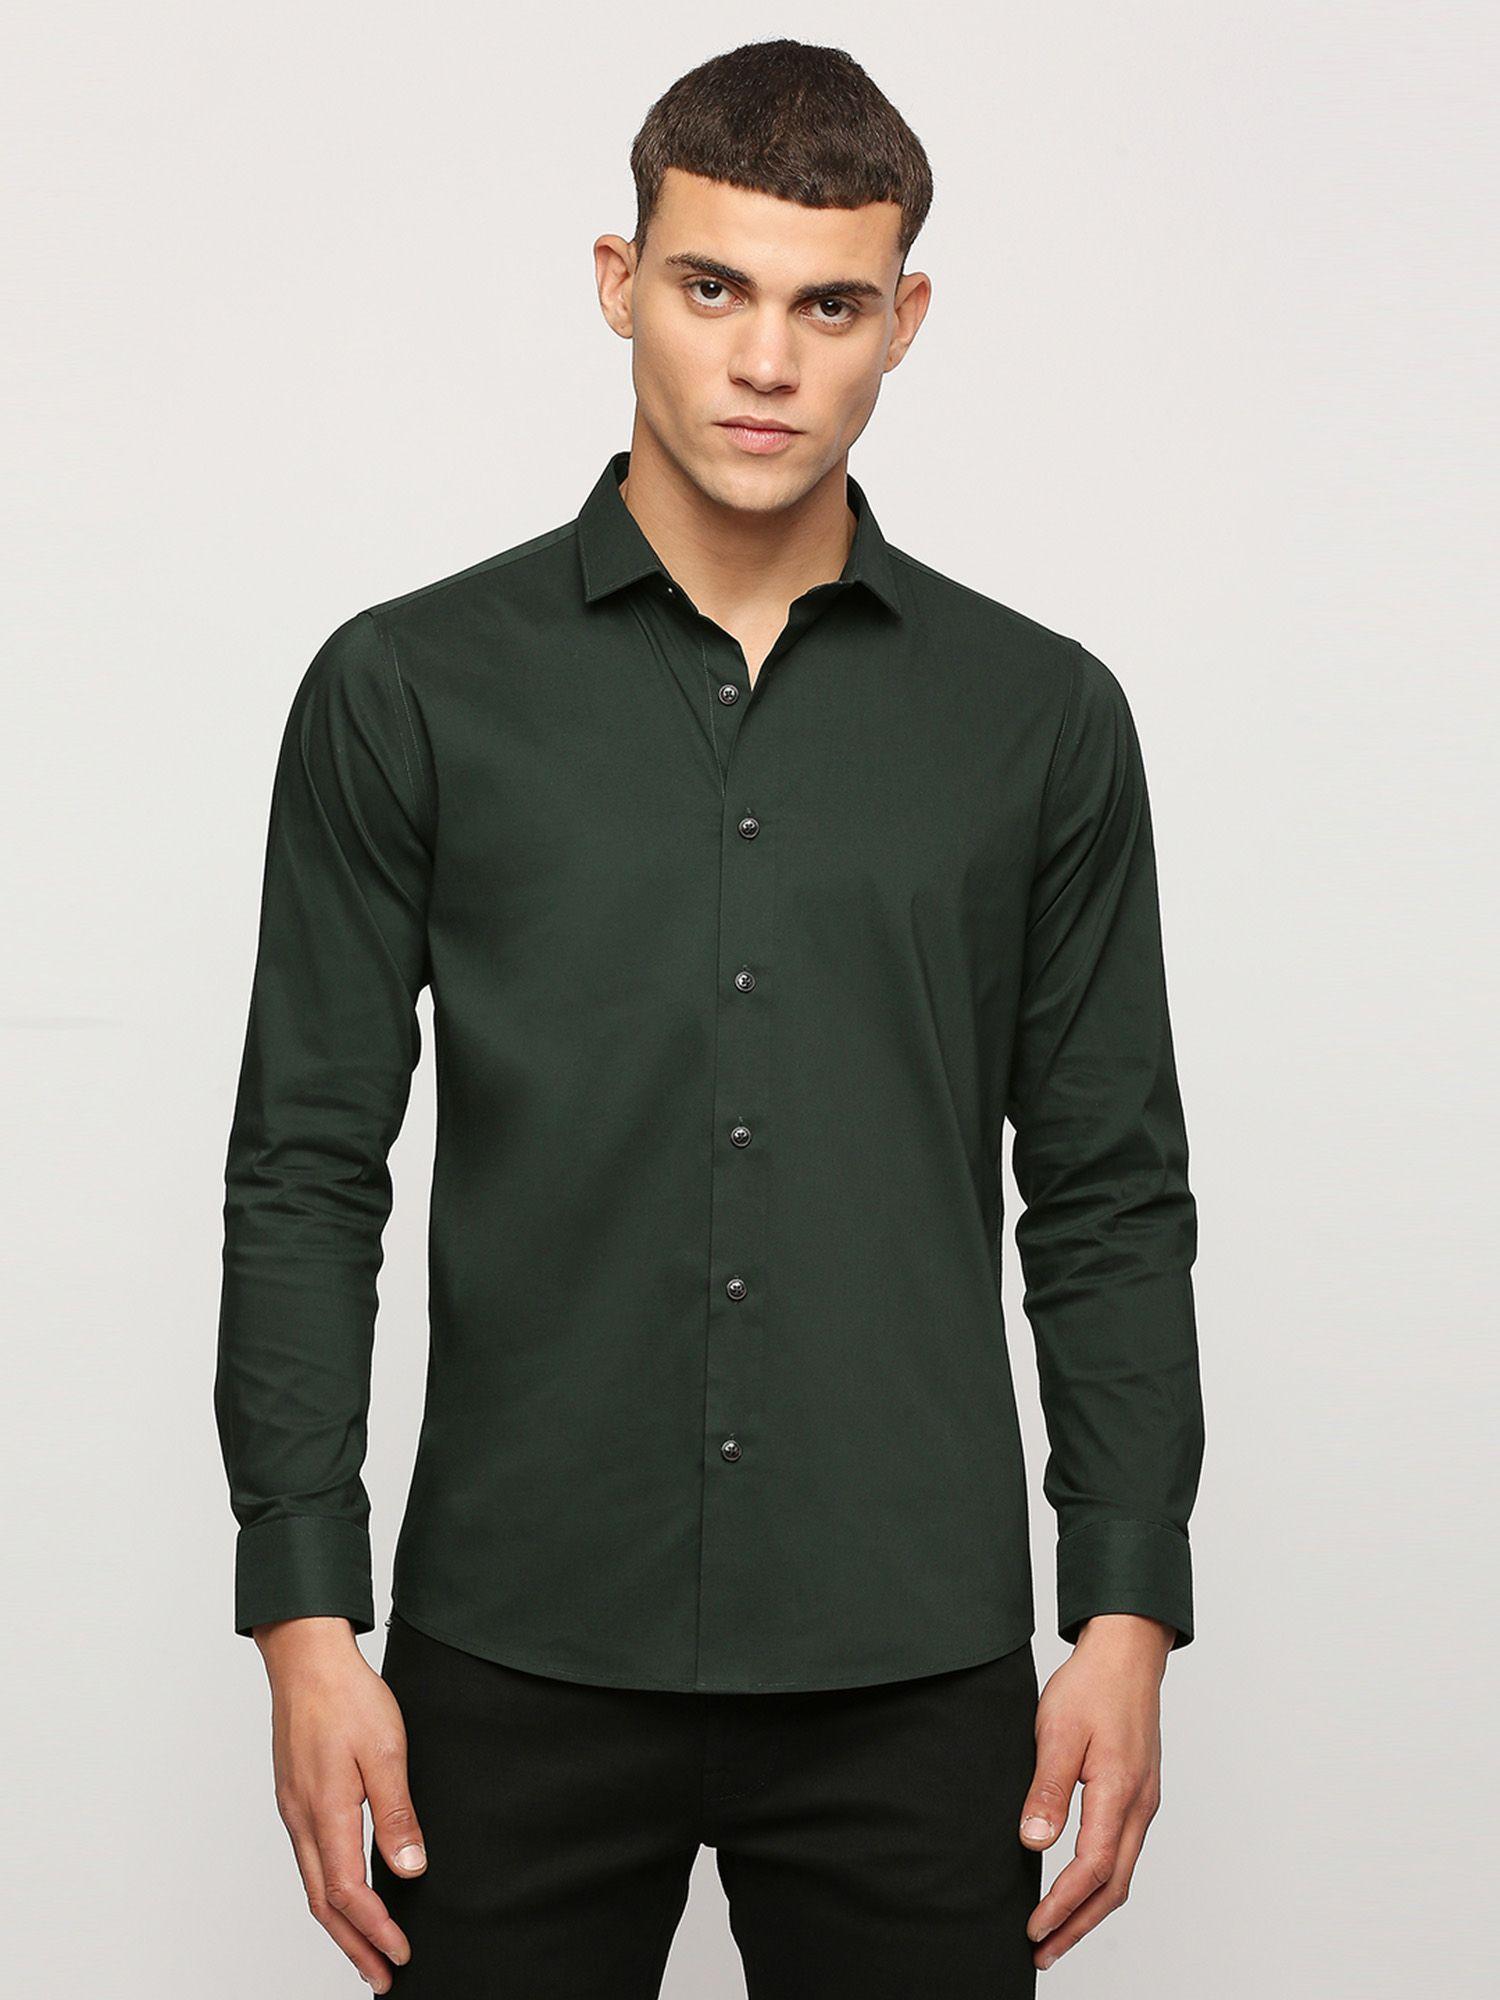 green full sleeves shirt